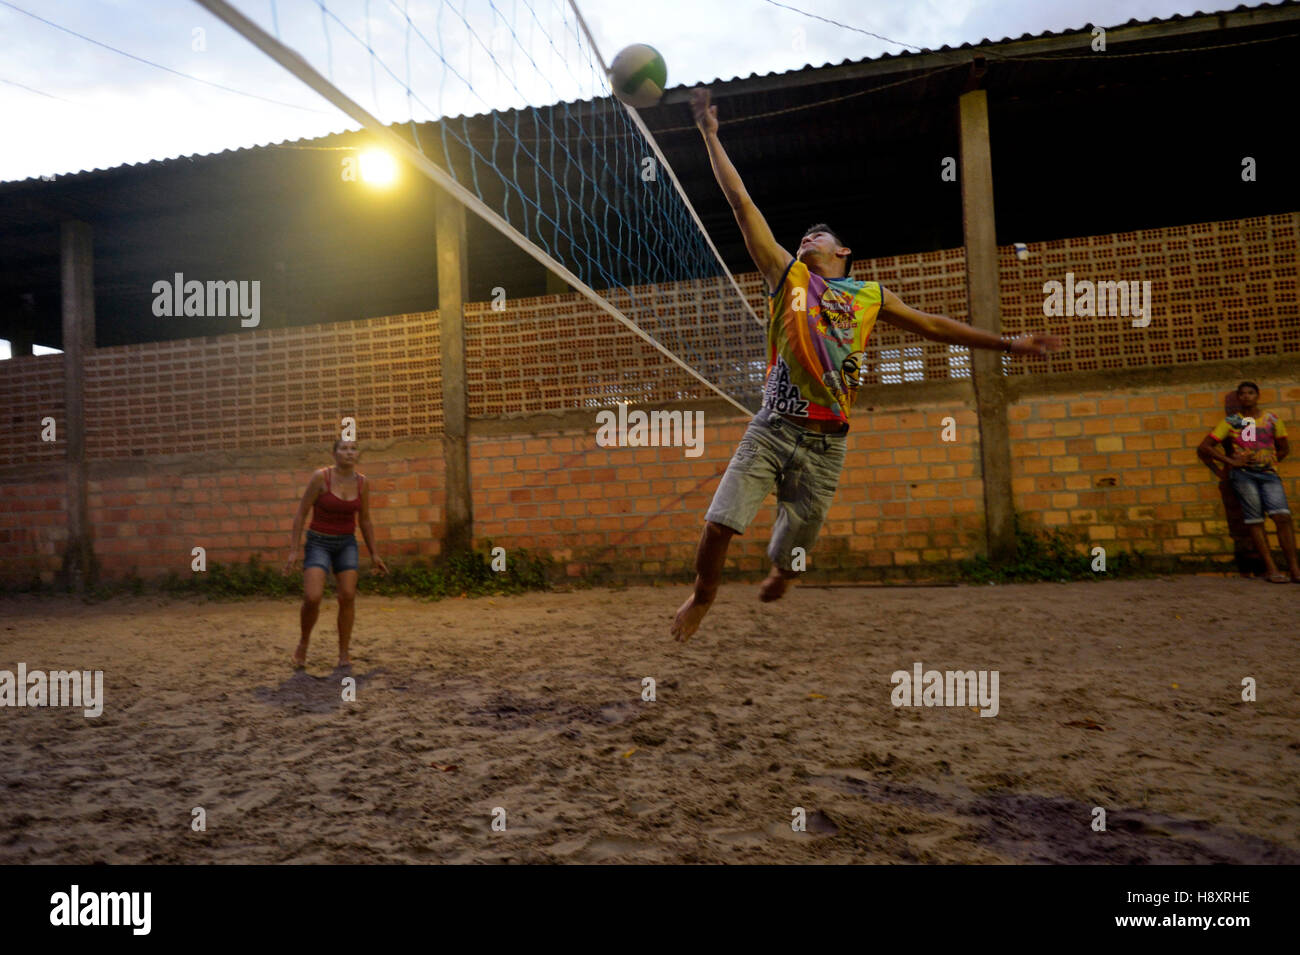 Les jeunes jouer au volley-ball, soirée, Trinta, District de Itaituba, Pará, Brésil Banque D'Images